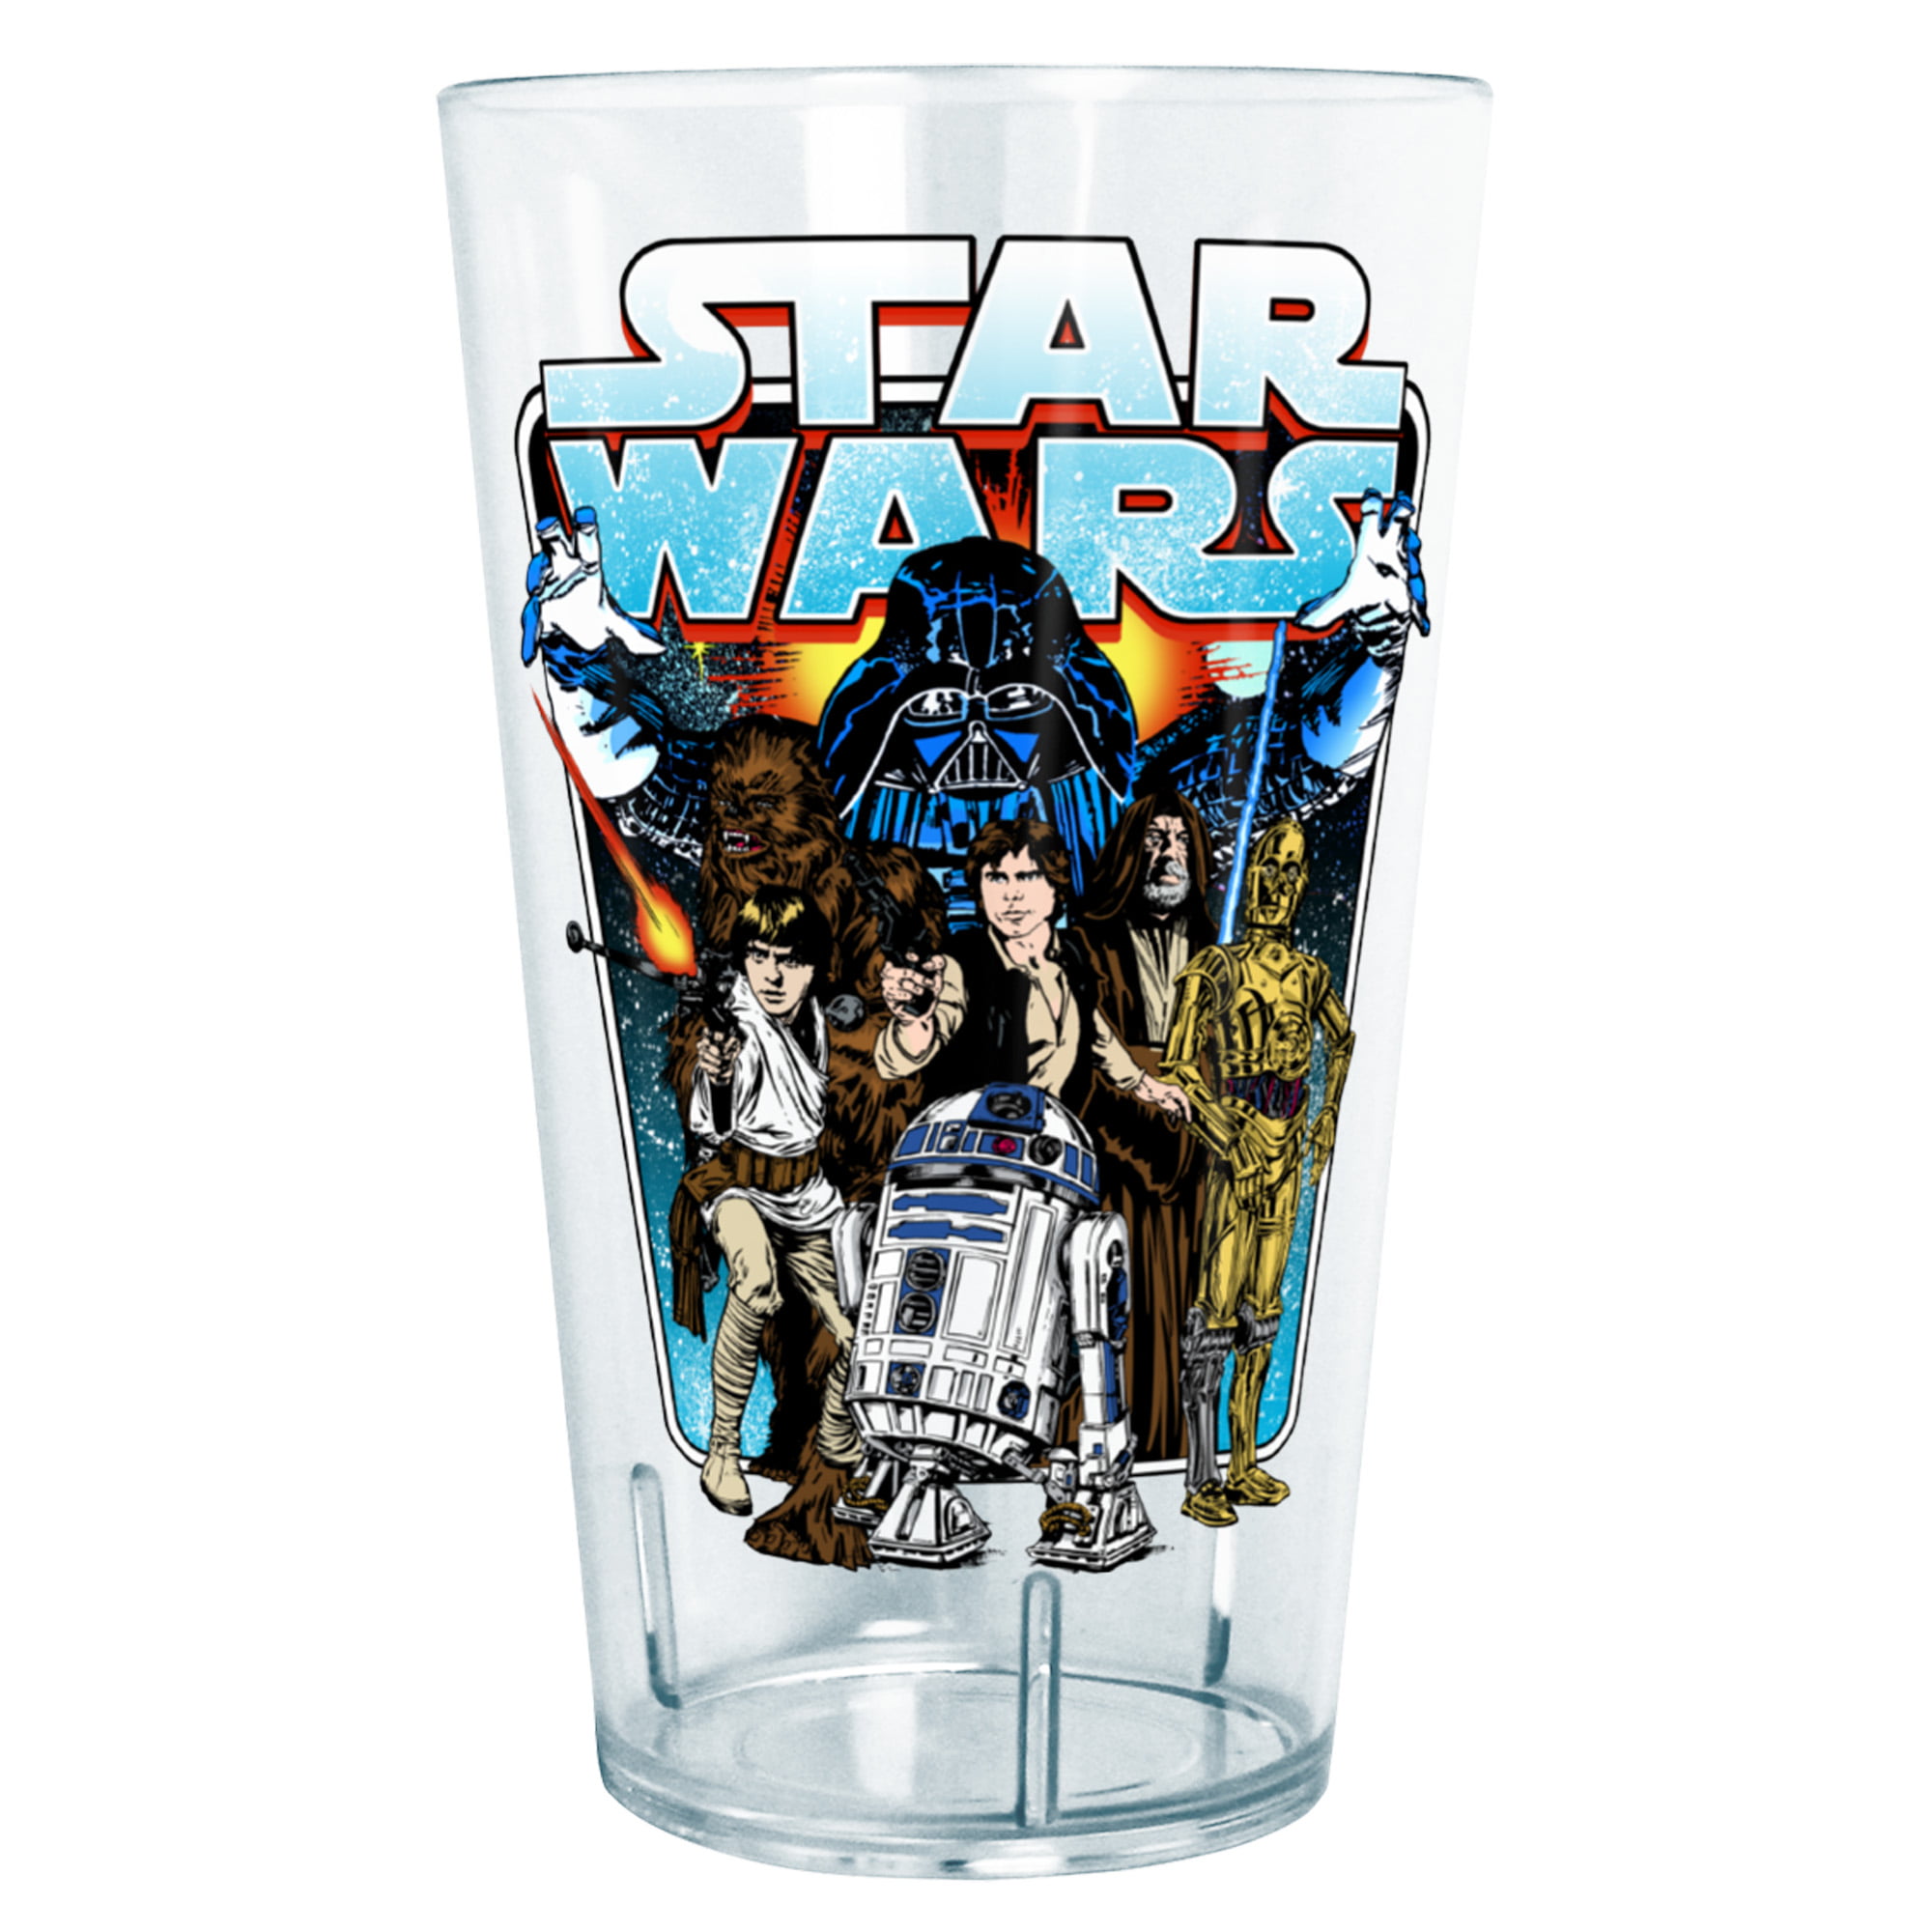 Star Wars AT-AT Retro Circle Tritan Drinking Cup - Clear - 24 oz.